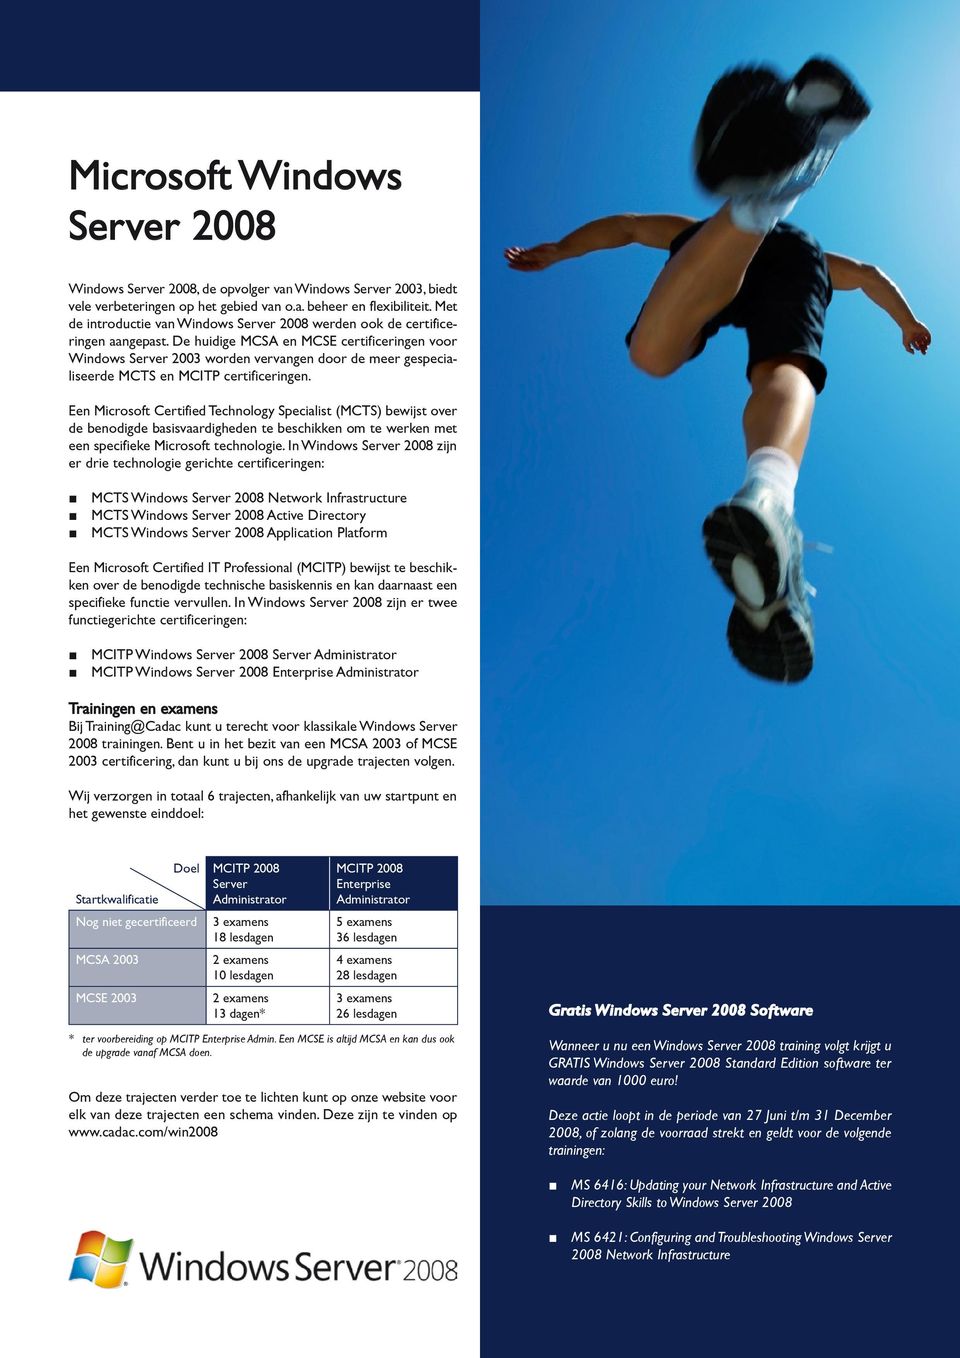 De huidige MCSA en MCSE certificeringen voor Windows Server 2003 worden vervangen door de meer gespecialiseerde MCTS en MCITP certificeringen.